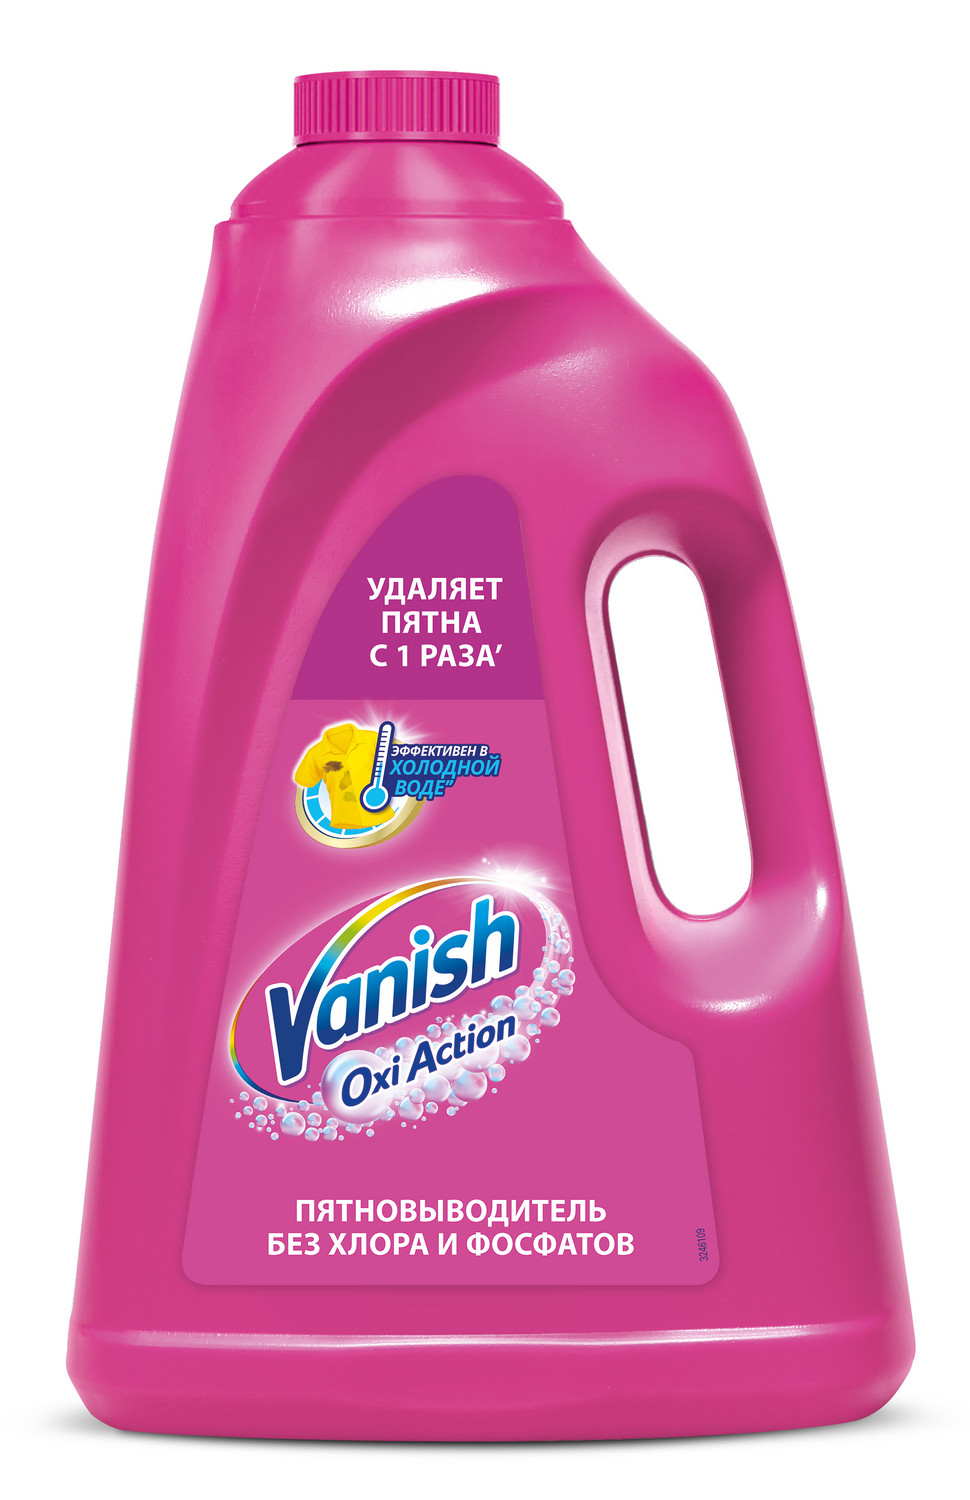 Пятновыводитель Vanish oxi action для тканей жидкий 3 л - купить в Мегамаркет Спб, цена на Мегамаркет